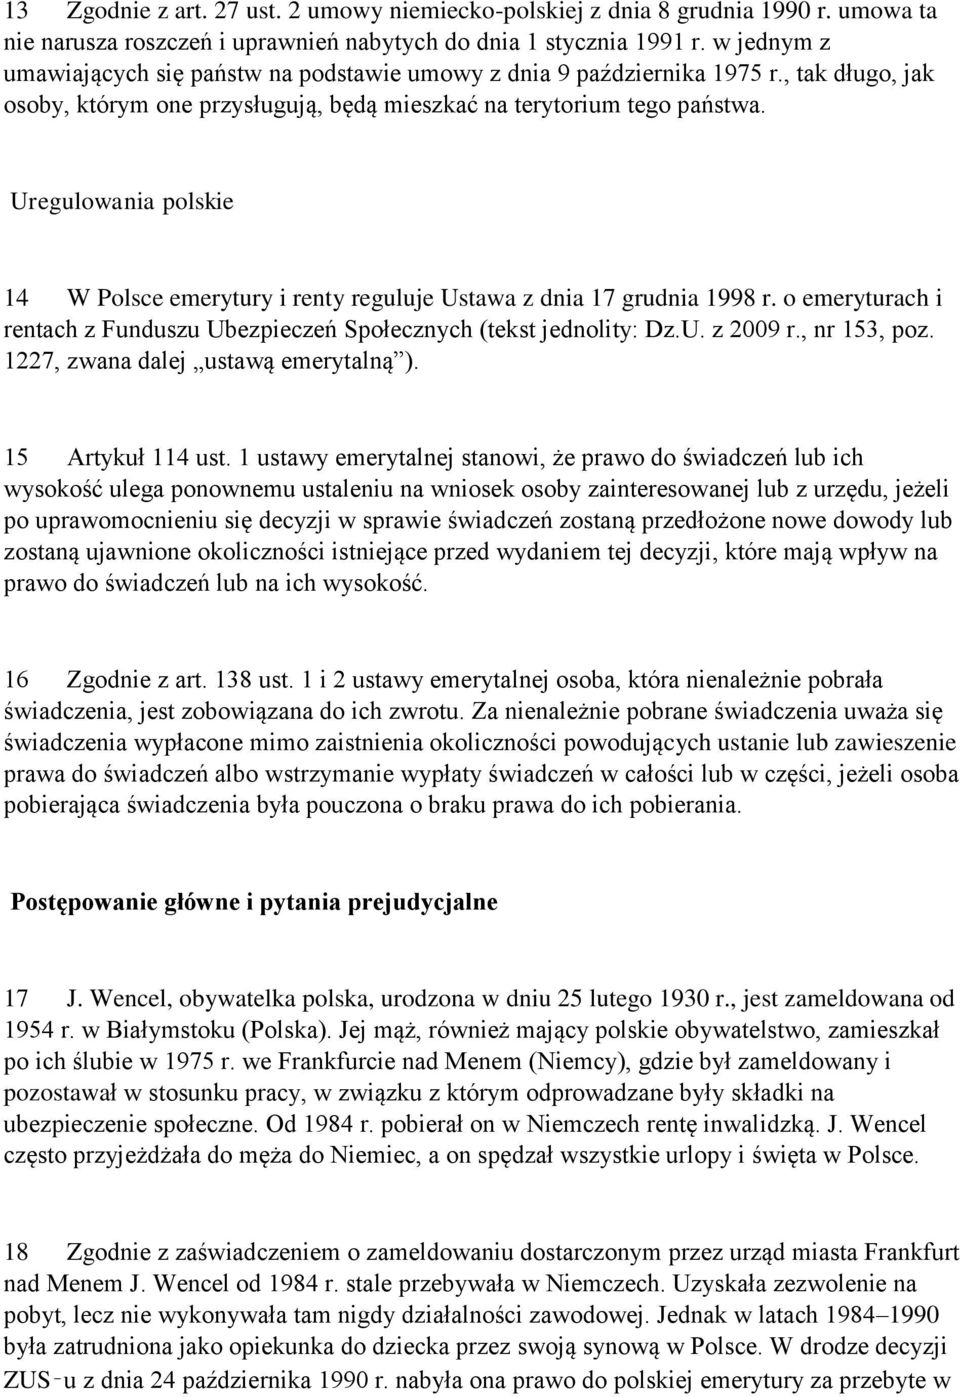 Uregulowania polskie 14 W Polsce emerytury i renty reguluje Ustawa z dnia 17 grudnia 1998 r. o emeryturach i rentach z Funduszu Ubezpieczeń Społecznych (tekst jednolity: Dz.U. z 2009 r., nr 153, poz.